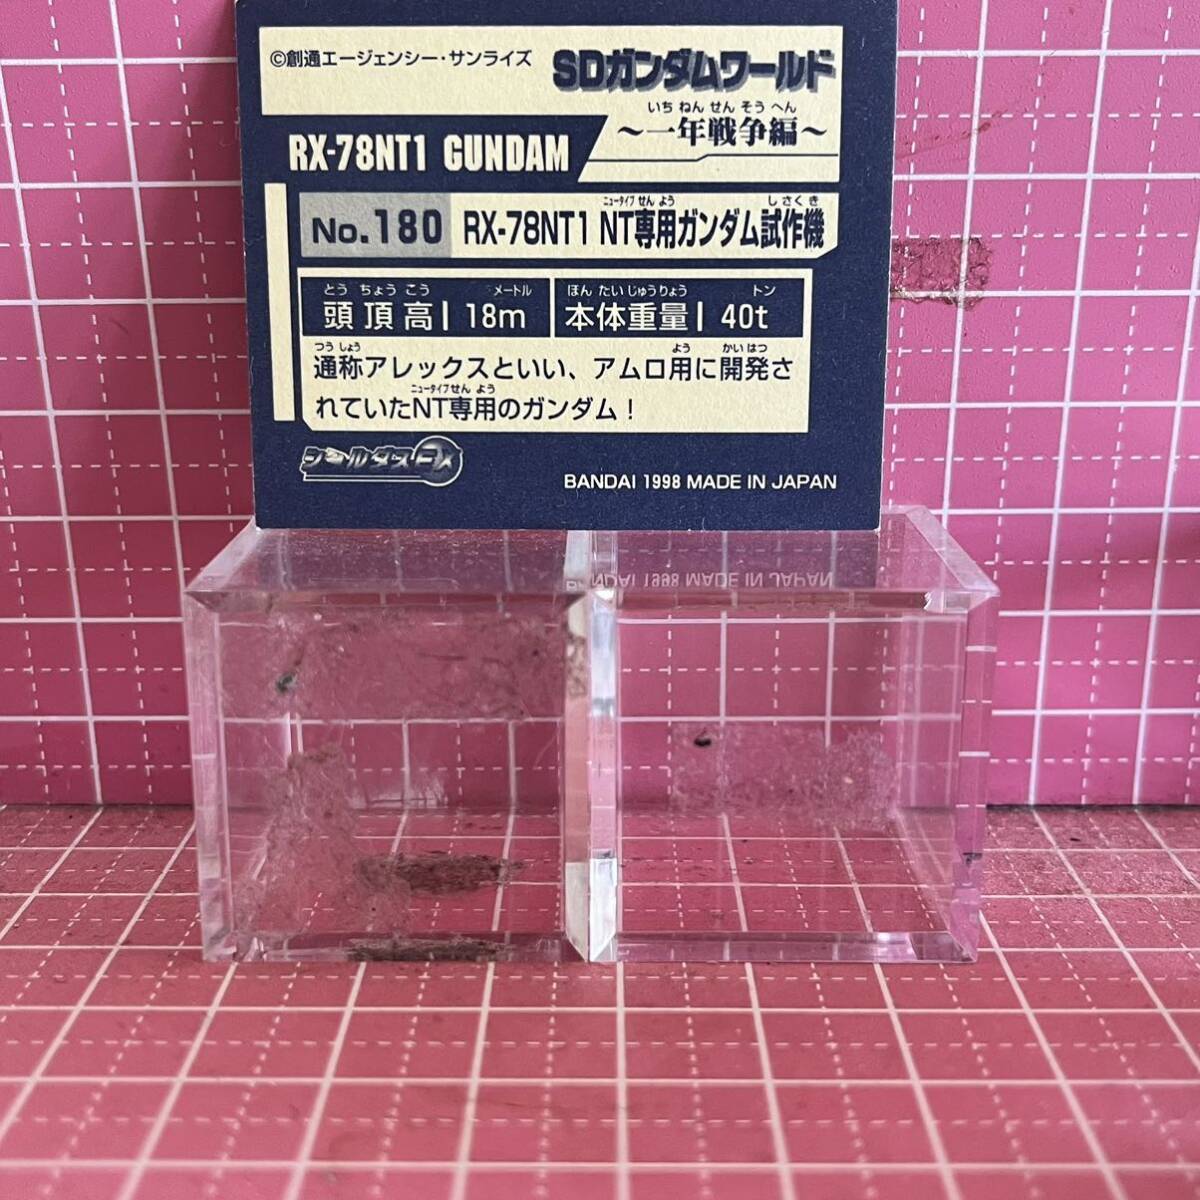  seal dasEX SD Gundam No.180 RX-78NT-1 Gundam seal card inspection ) gun erasing 